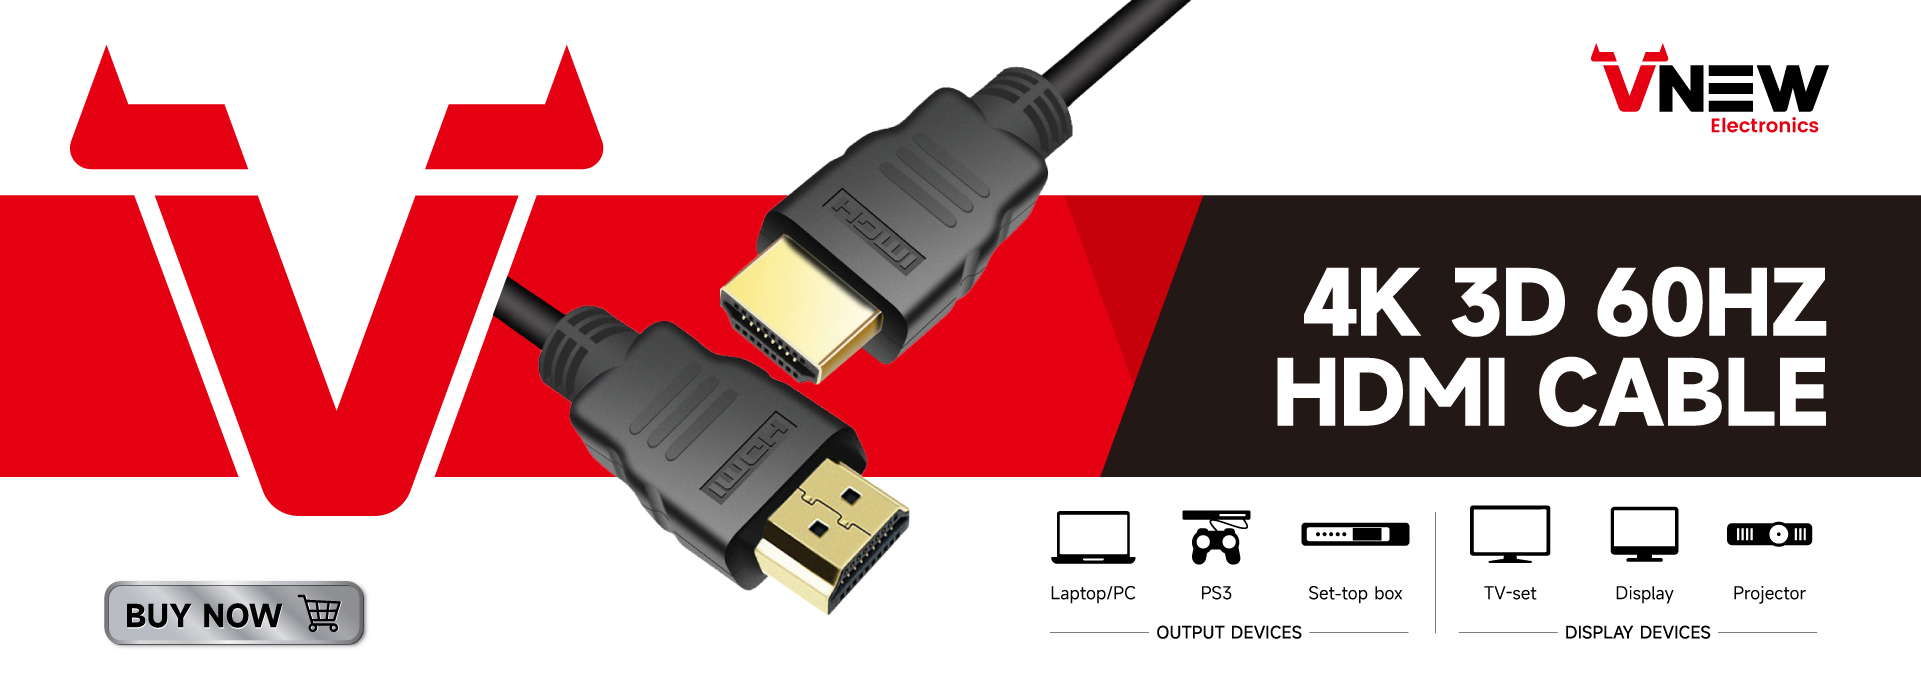 VN-HDP01 Vnew စိတ်ကြိုက် အရှည် ပြသမှု ပို့တ် HDMI 4K 60Hz DP